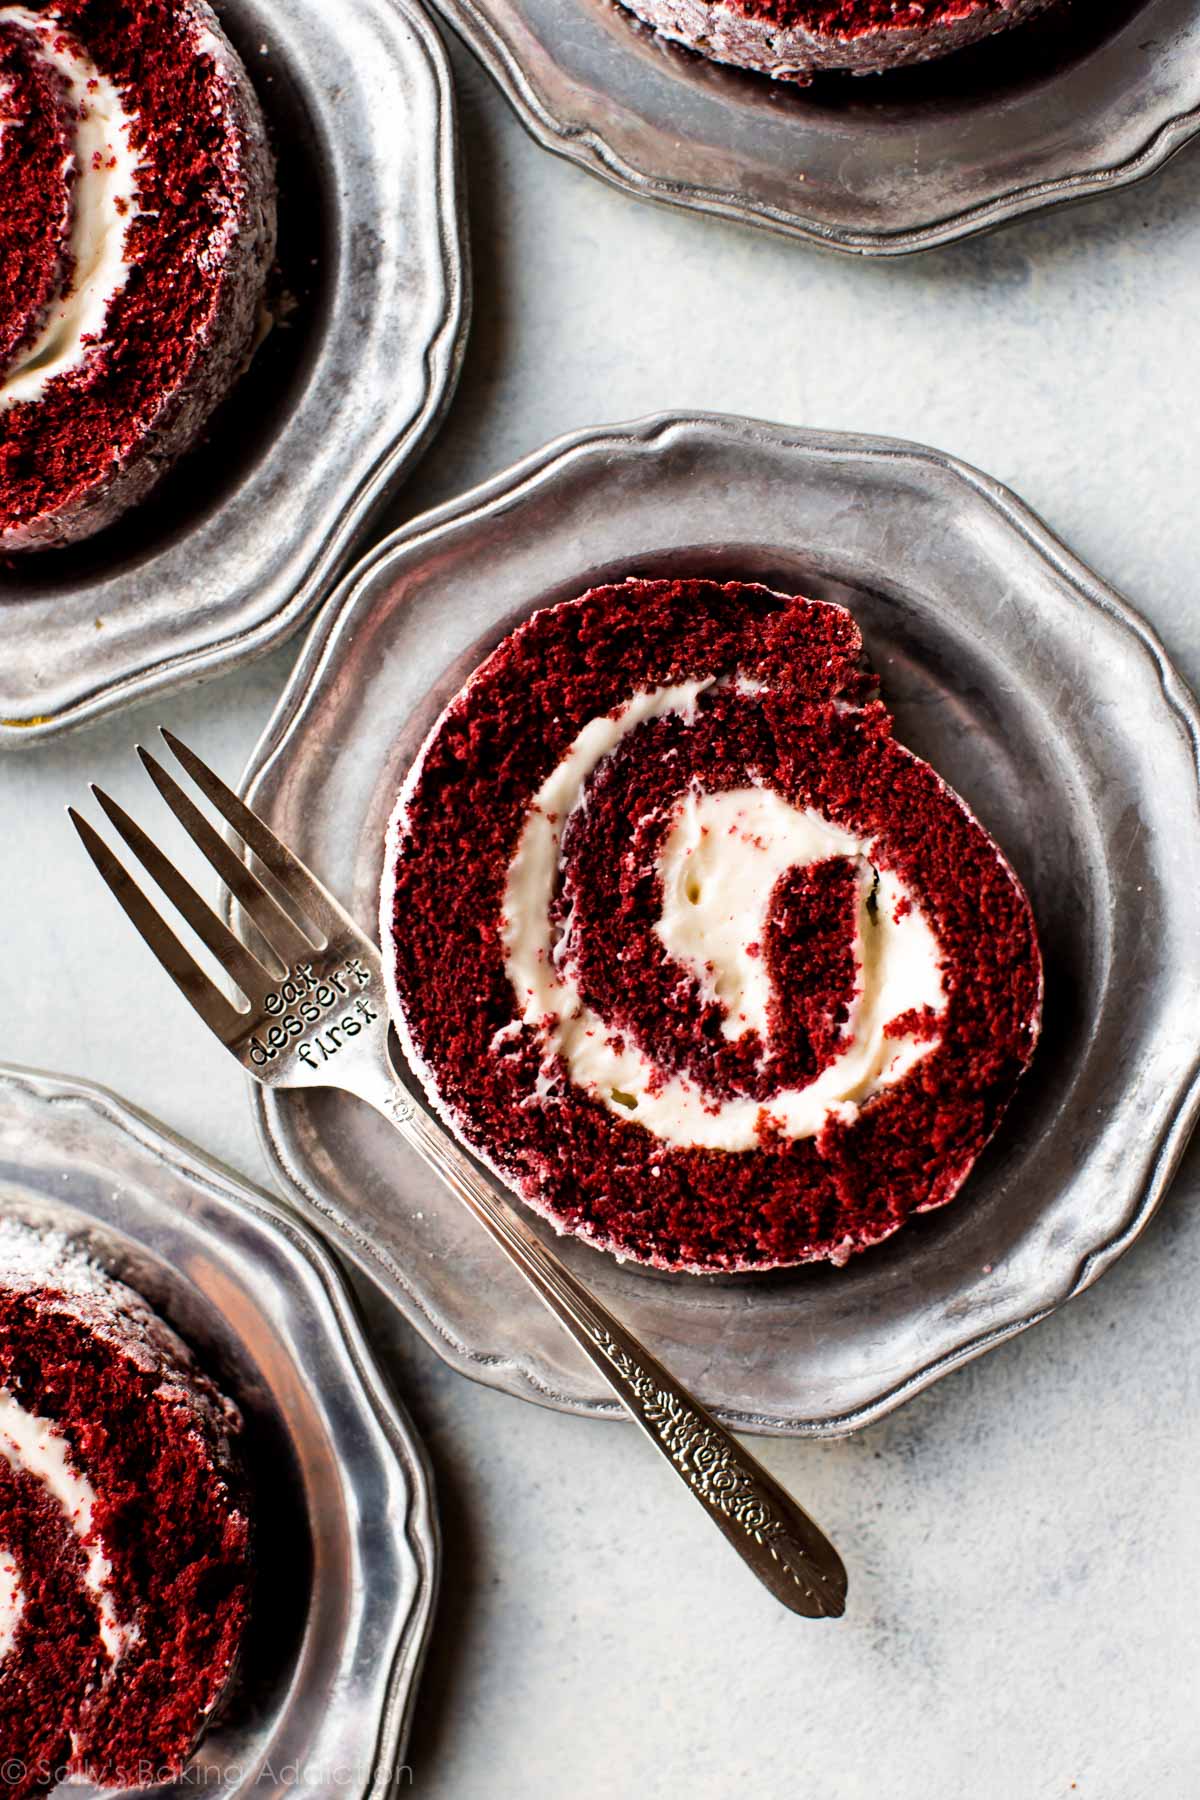 Apprenez à faire un rouleau de gâteau en velours rouge délicieusement doux en utilisant ce tutoriel photo et cette recette étape par étape! sallysbakingaddiction.com